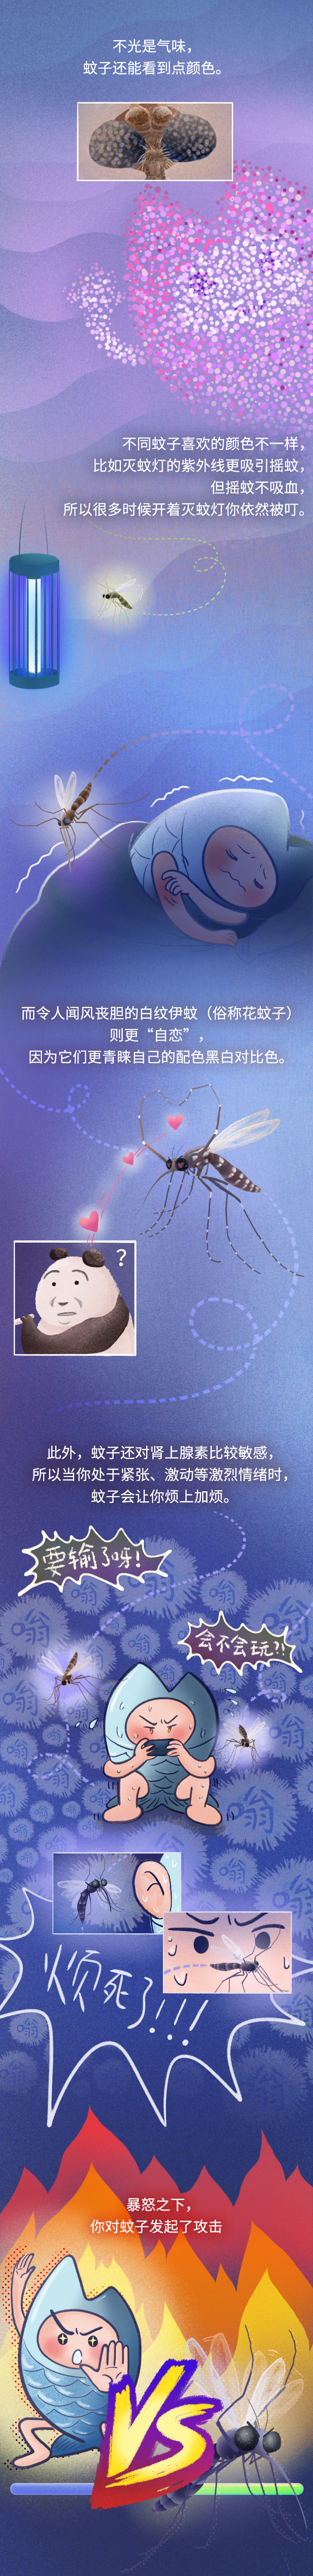 大鱼漫画丨O型血真的招蚊子？听歌还能驱蚊？夏日防蚊指南来了